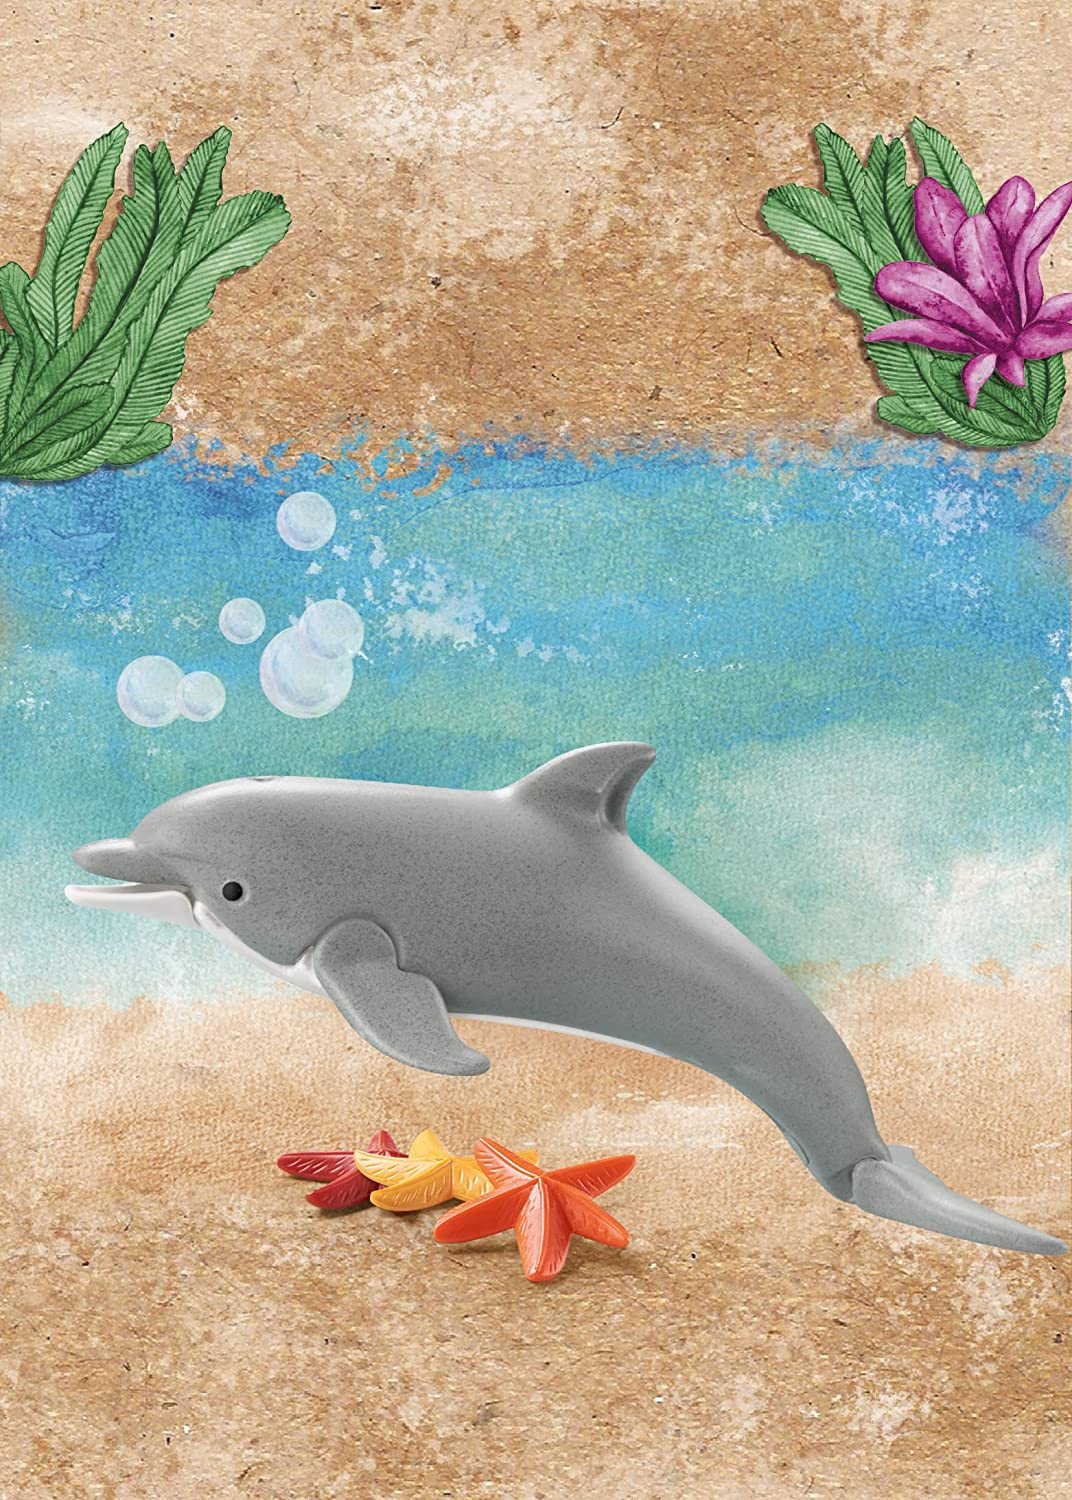 Playmobil- animaux 71051 delfino - wiltopia - fatto in materiali sostenibili - Playmobil